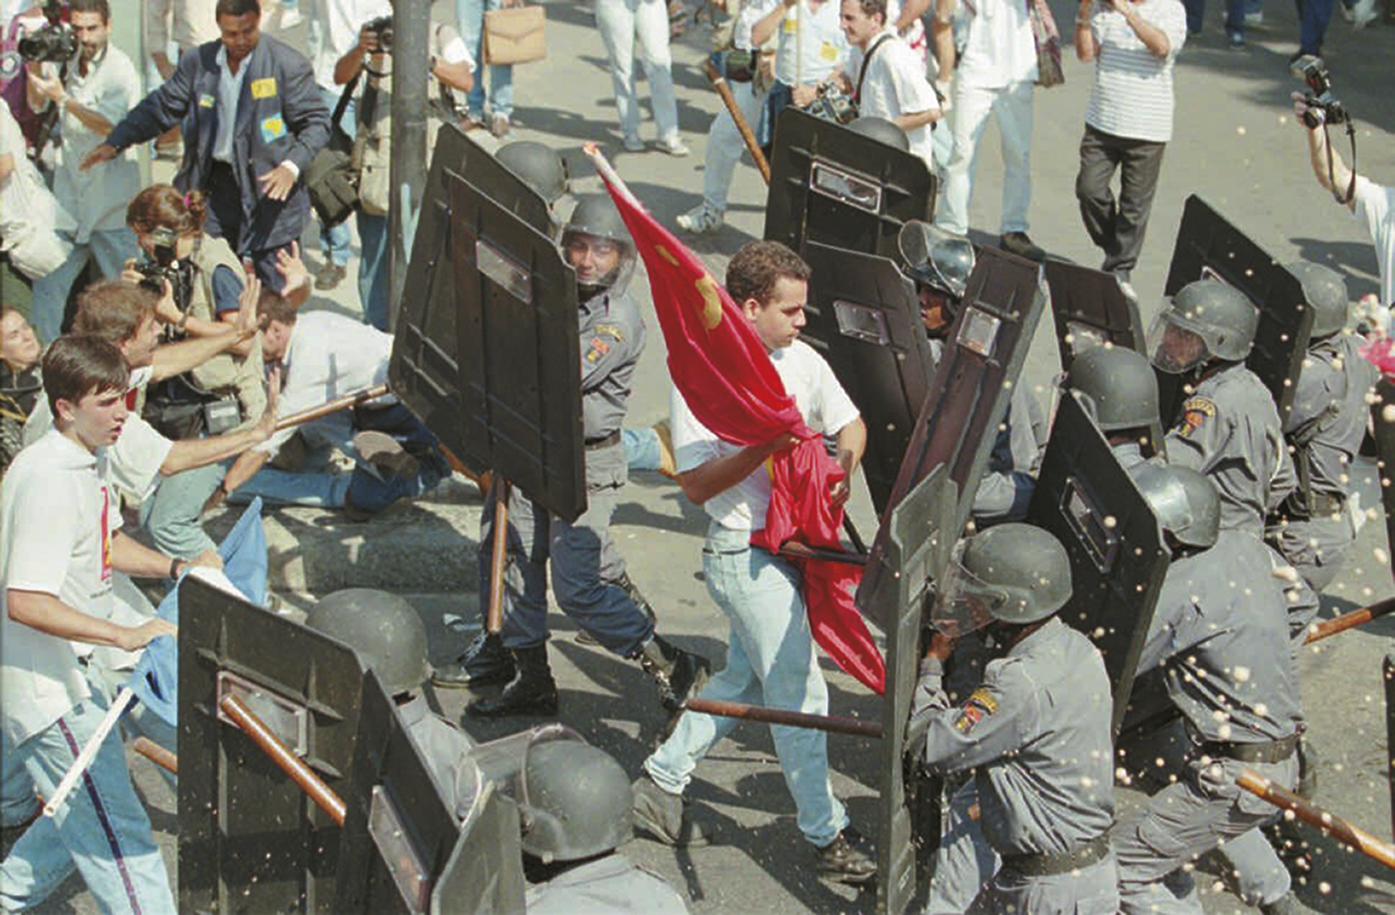 Fotografia. À esquerda jovens uniformizados segurando bandeiras. À direita, policiais segurando bastões e escudos. Entre eles, há um jovem caminhando com uma bandeira vermelha entre os policiais.